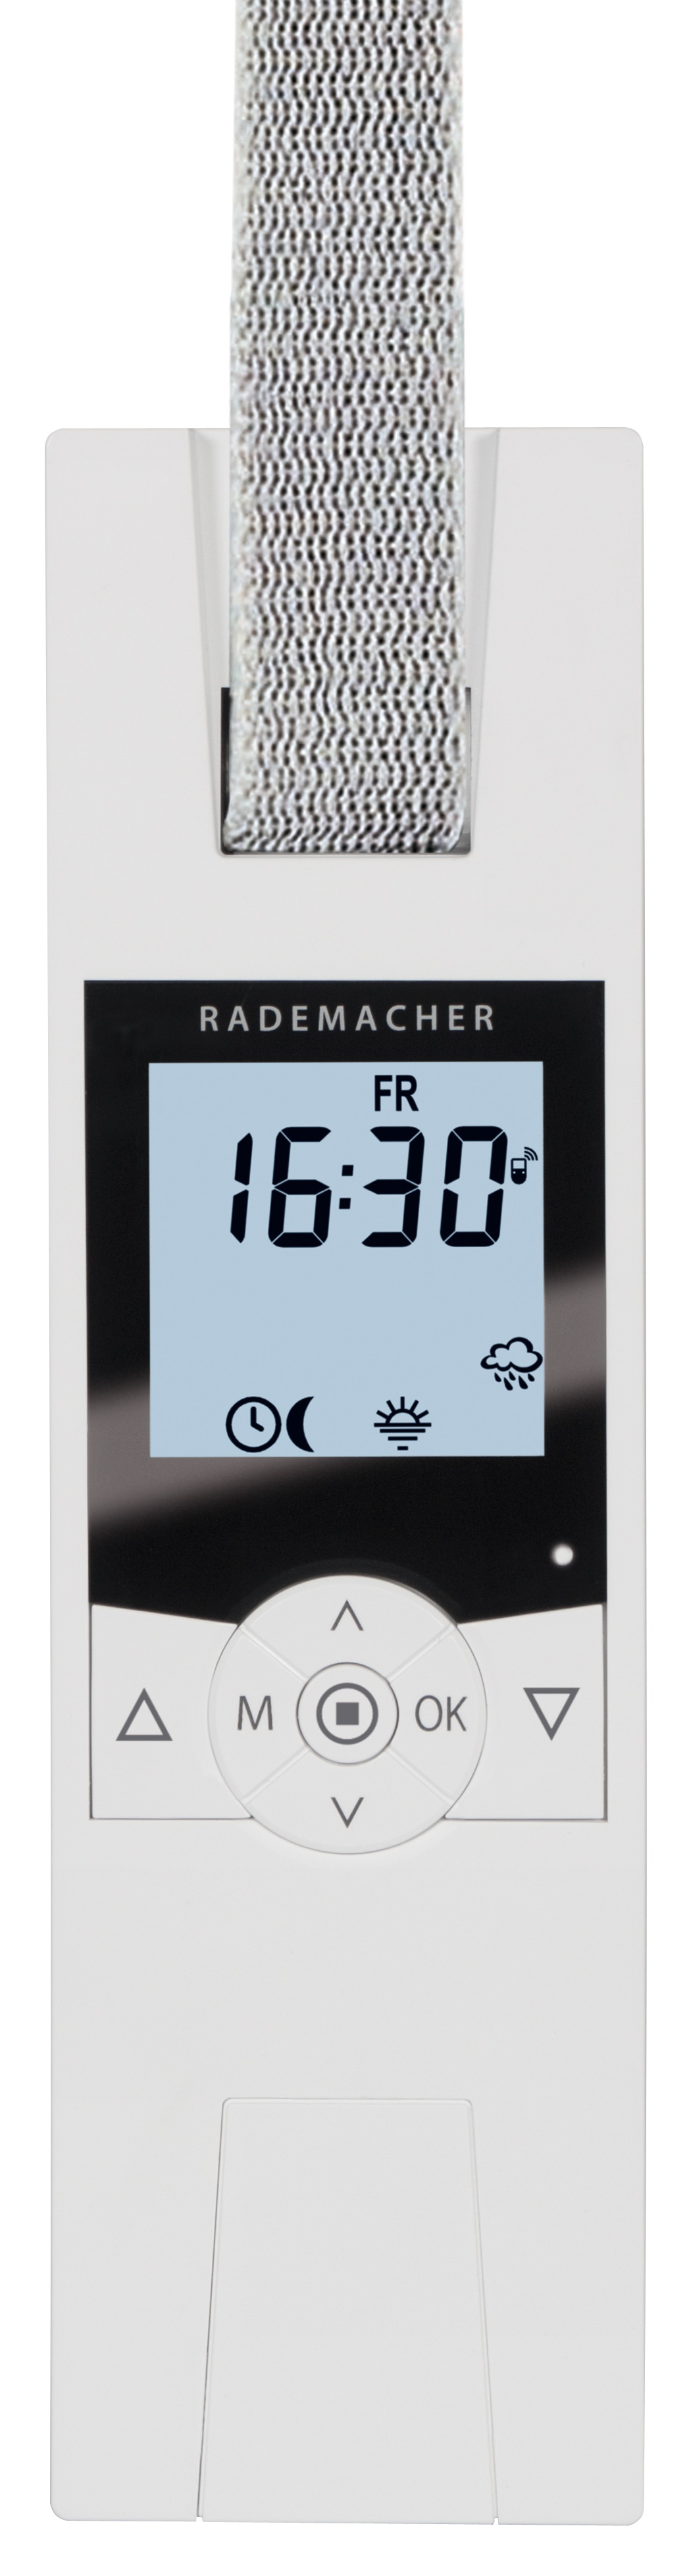 Rademacher RolloTron Comfort DuoFern 1800